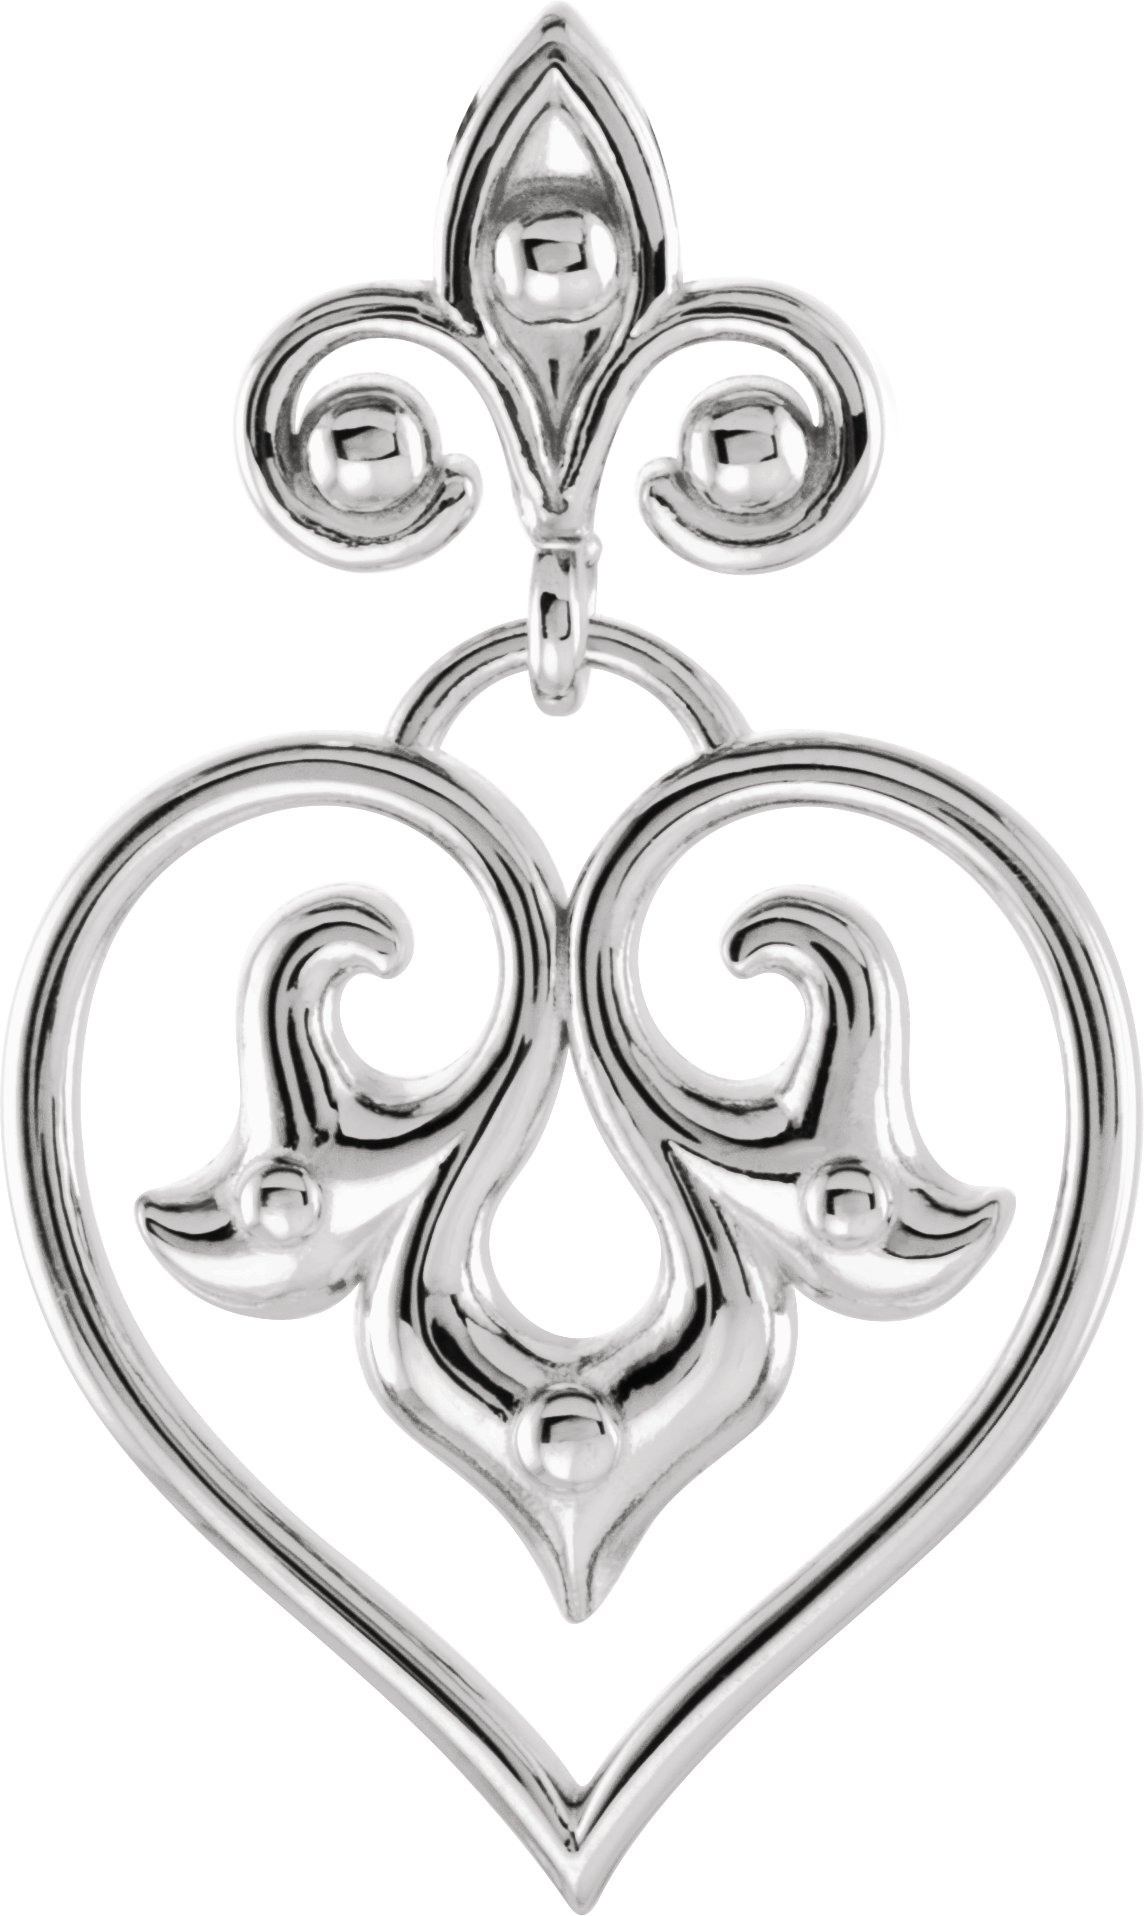 Sterling Silver Decorative Pendant Ref. 4240002